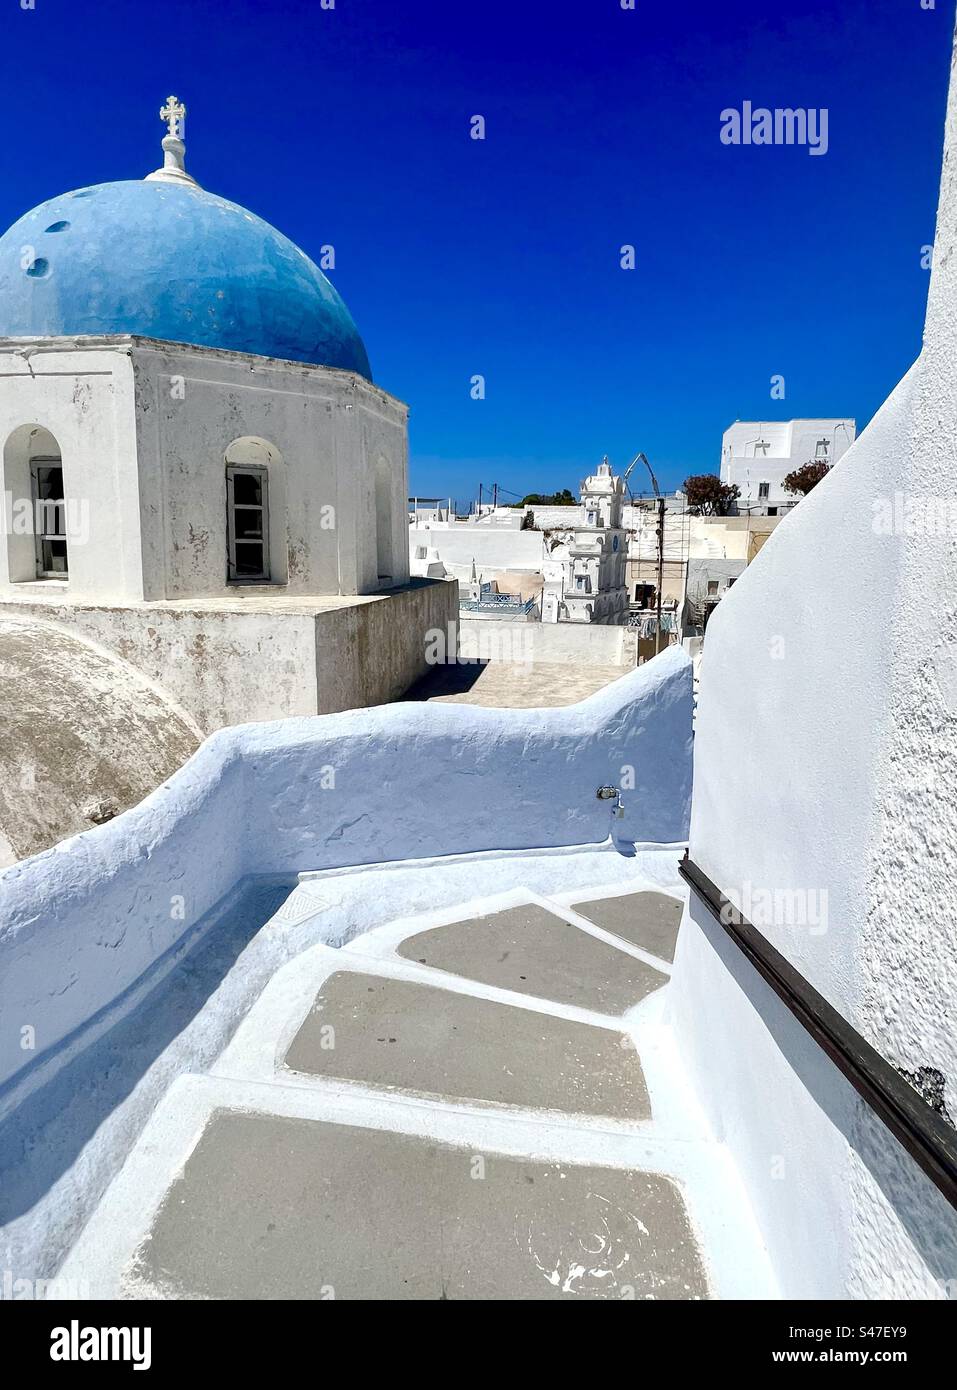 Wände in blassblau und weiß säumen einen gewundenen Treppenpfad, der hinunter zum Zentrum des Dorfes Megalochori führt, vorbei an der blauen Kuppelkirche Zoodochos Pigi. Santorin Stockfoto